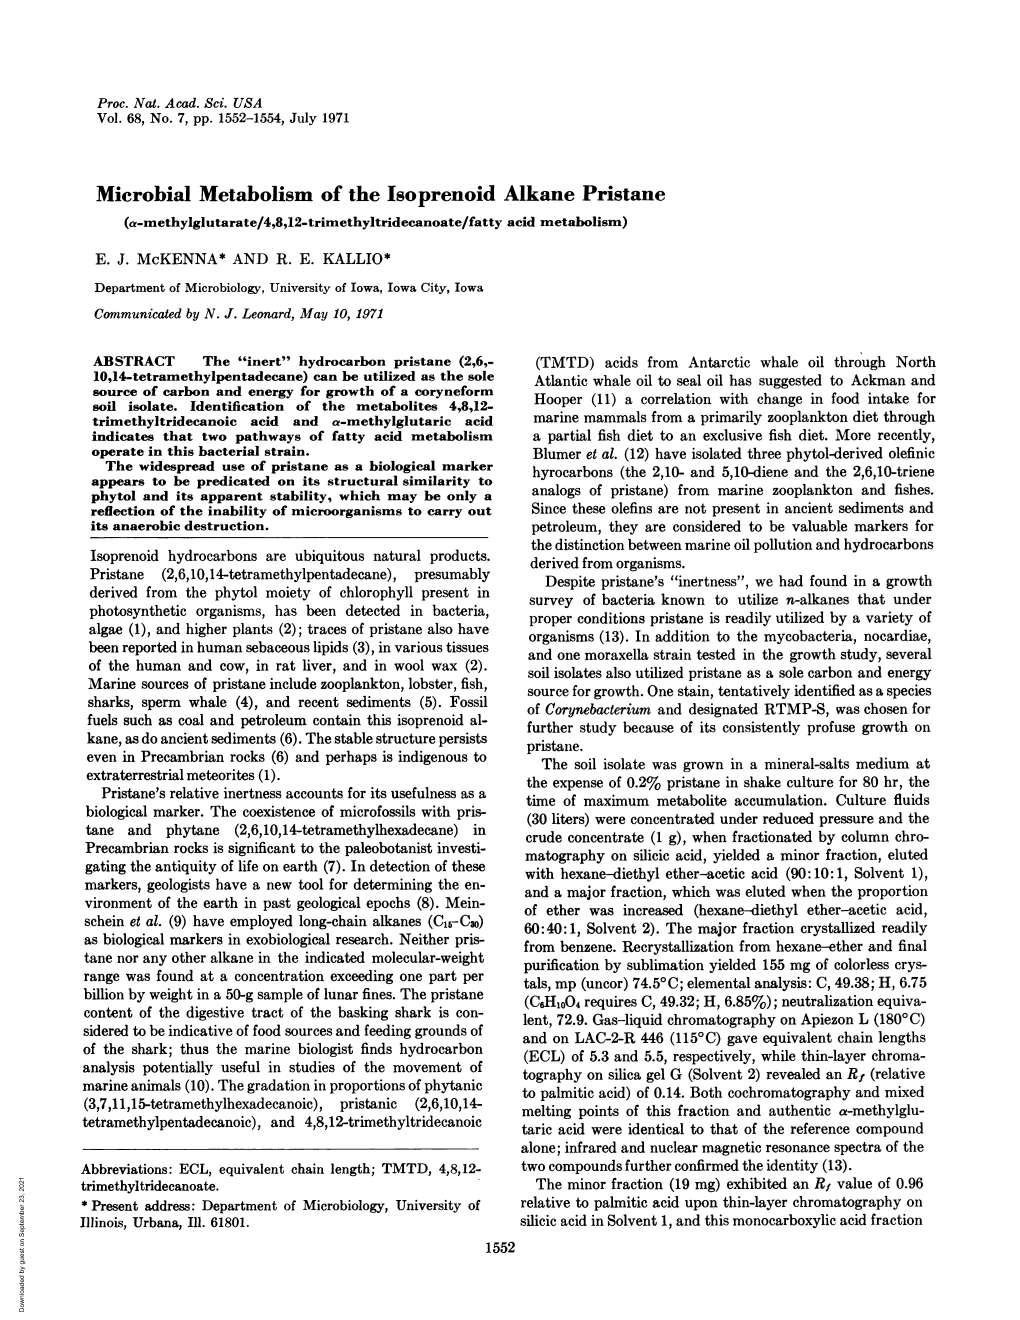 Microbial Metabolism of the Isoprenoid Alkane Pristane (A-Methylglutarate/4,8,12-Trimethyltridecanoate/Fatty Acid Metabolism)